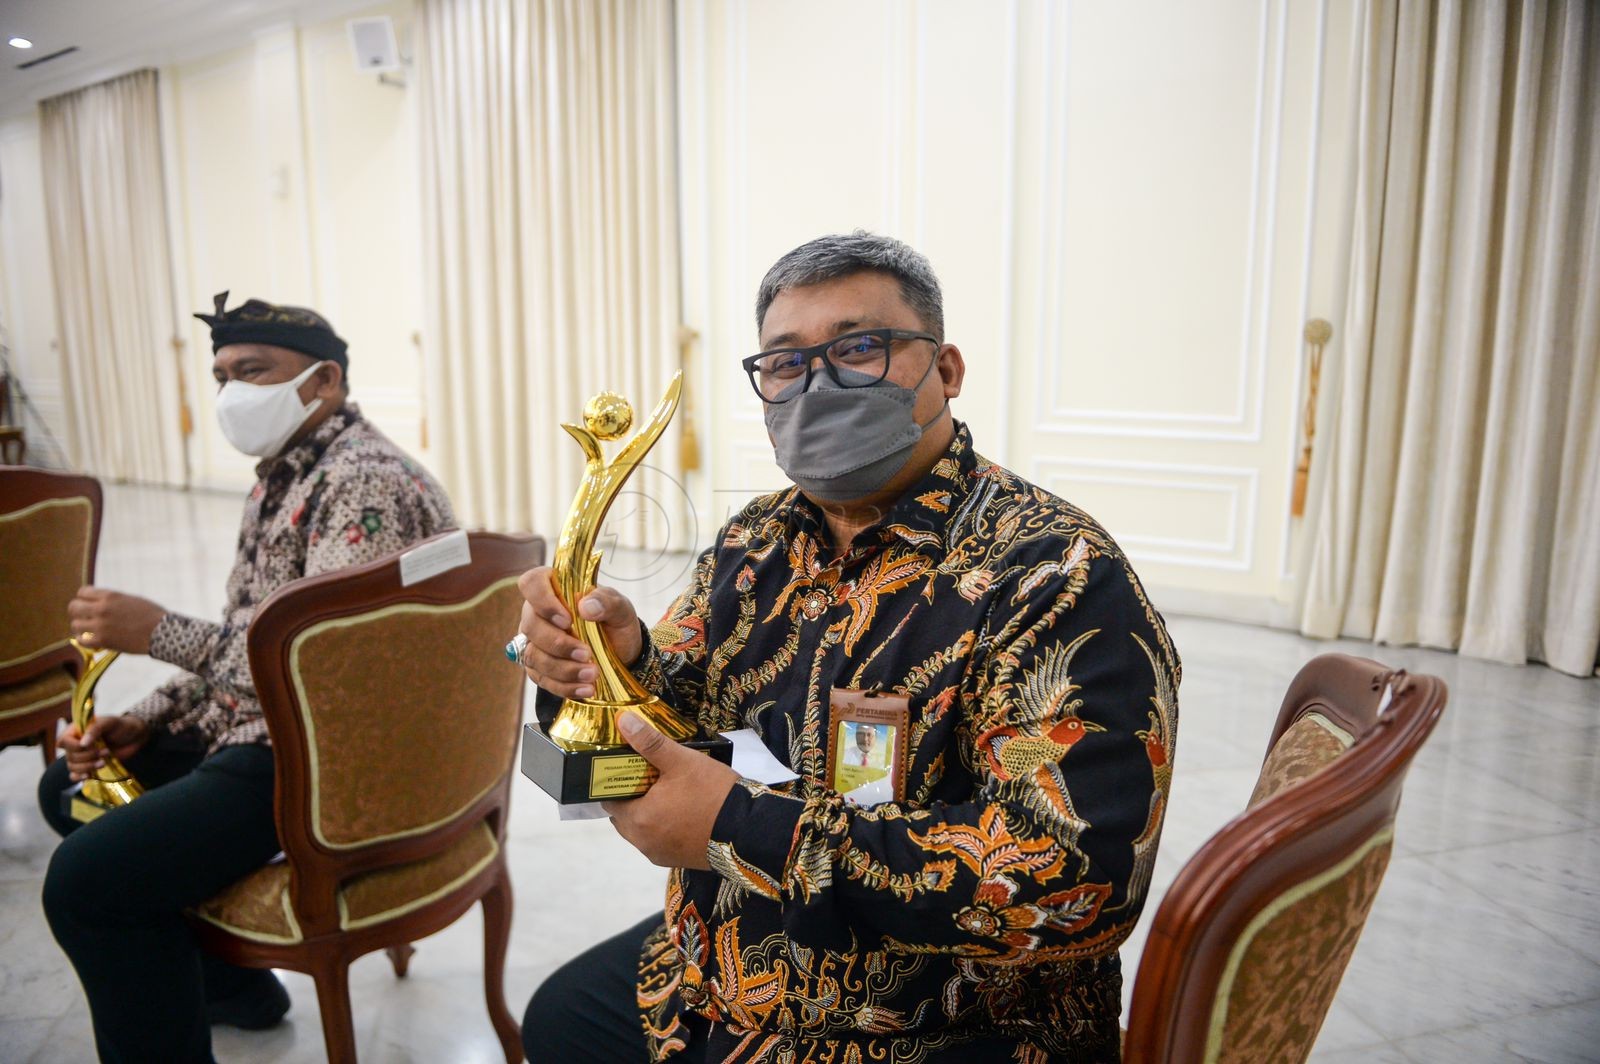 Pertamina Patra Niaga Kalimantan Raih 1 PROPER Emas dan 7 PROPER Hijau